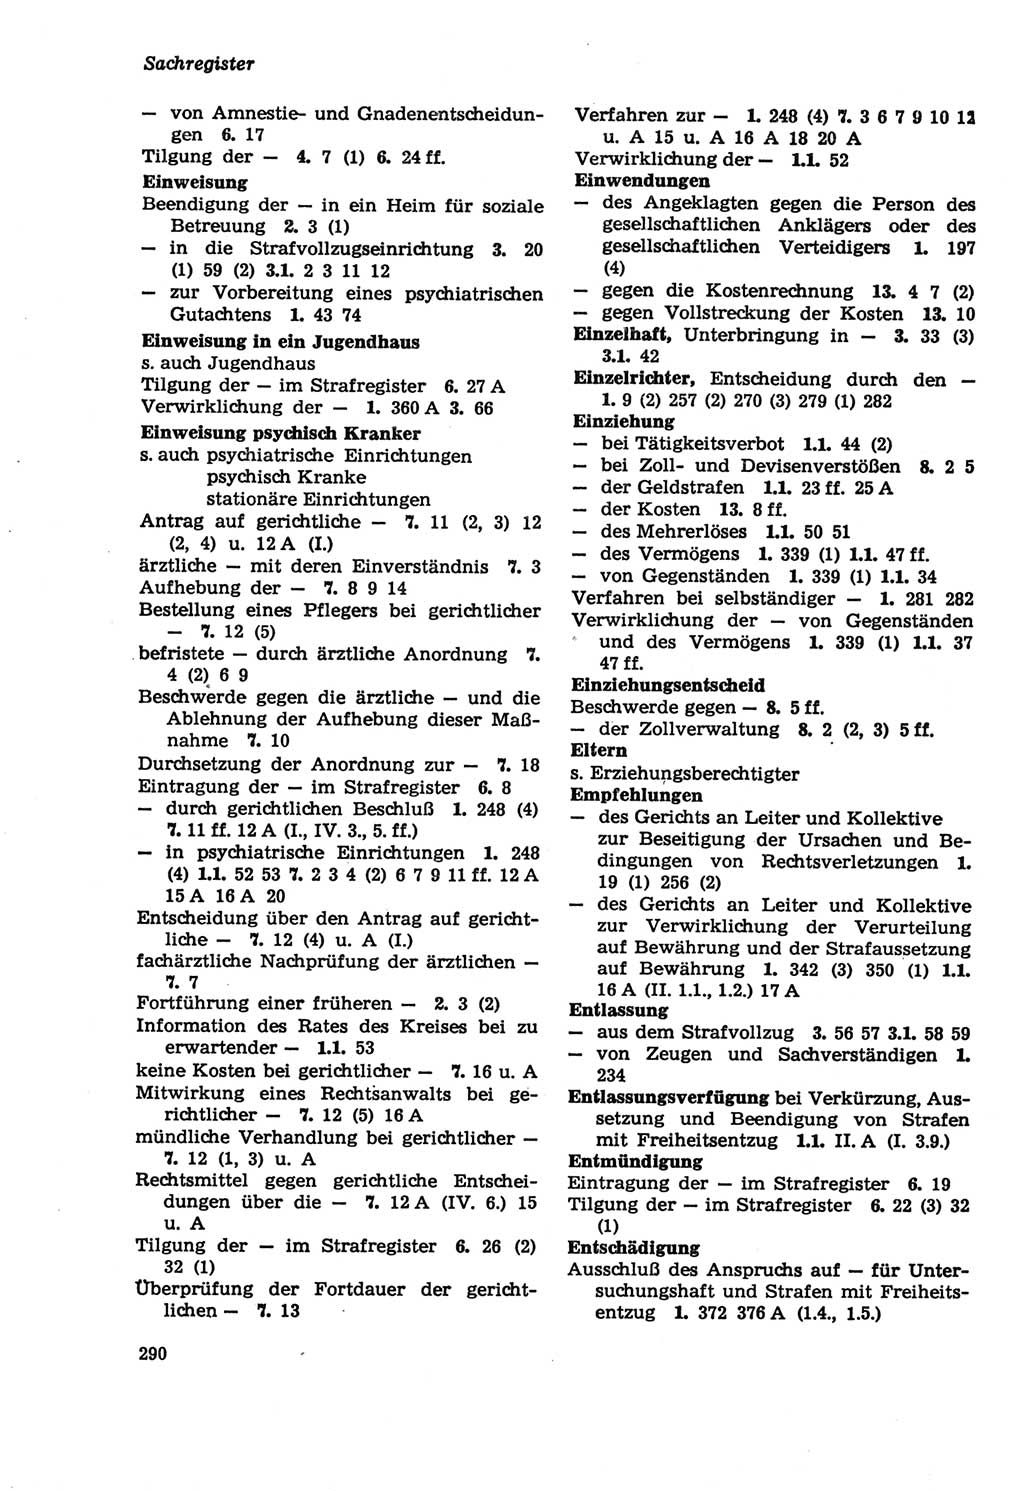 Strafprozeßordnung (StPO) der Deutschen Demokratischen Republik (DDR) sowie angrenzende Gesetze und Bestimmungen 1979, Seite 290 (StPO DDR Ges. Best. 1979, S. 290)